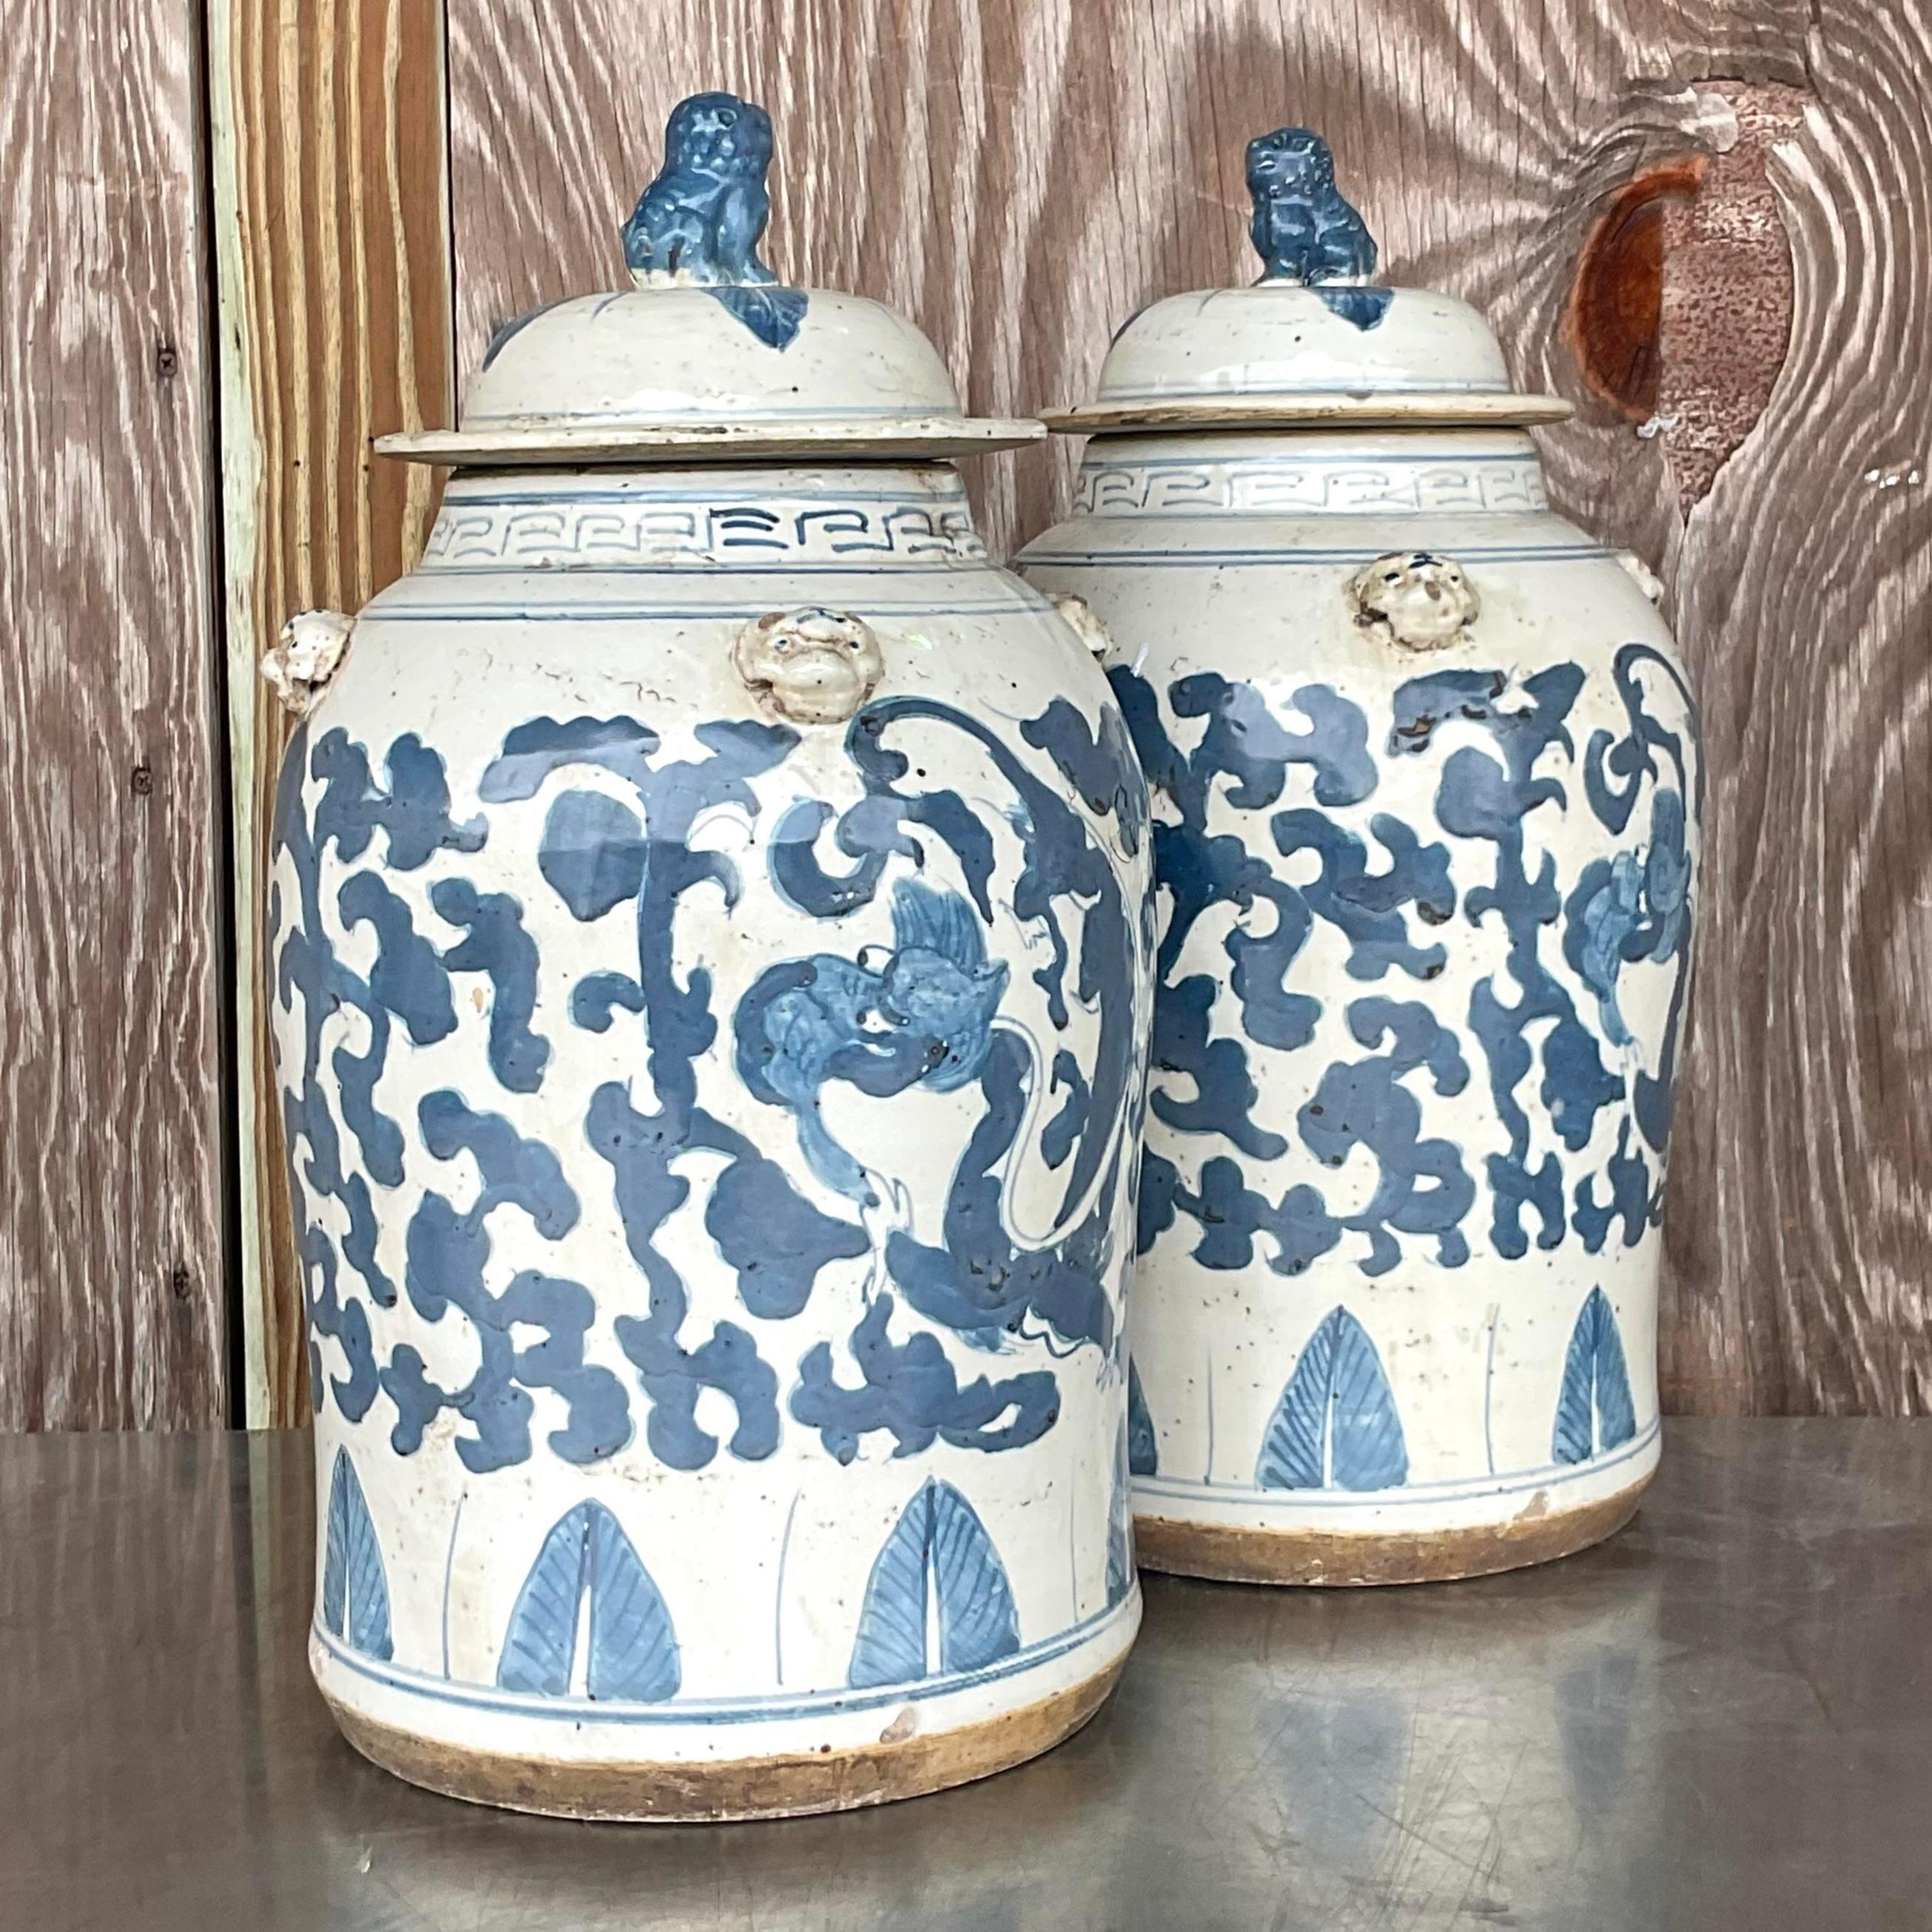 Une superbe paire d'urnes asiatiques vintage. Un motif emblématique bleu et blanc peint à la main. Chaque urne est surmontée d'une belle paire de chiens de chasse. Acquis d'une succession de Palm Beach